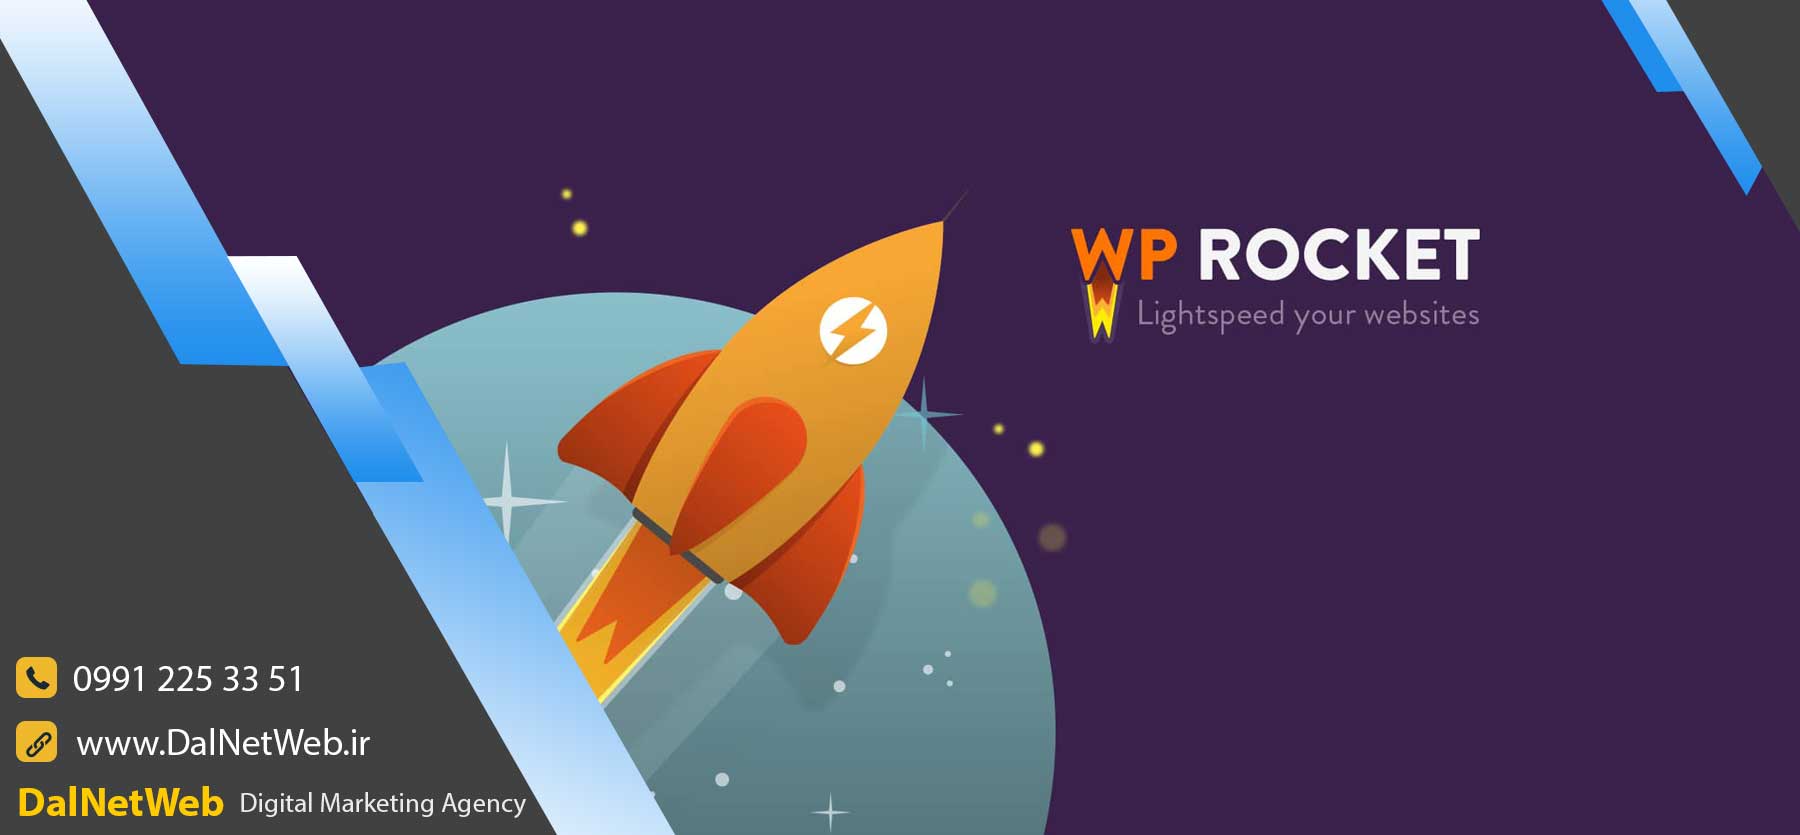 پیکربندی افزونه WP rocket